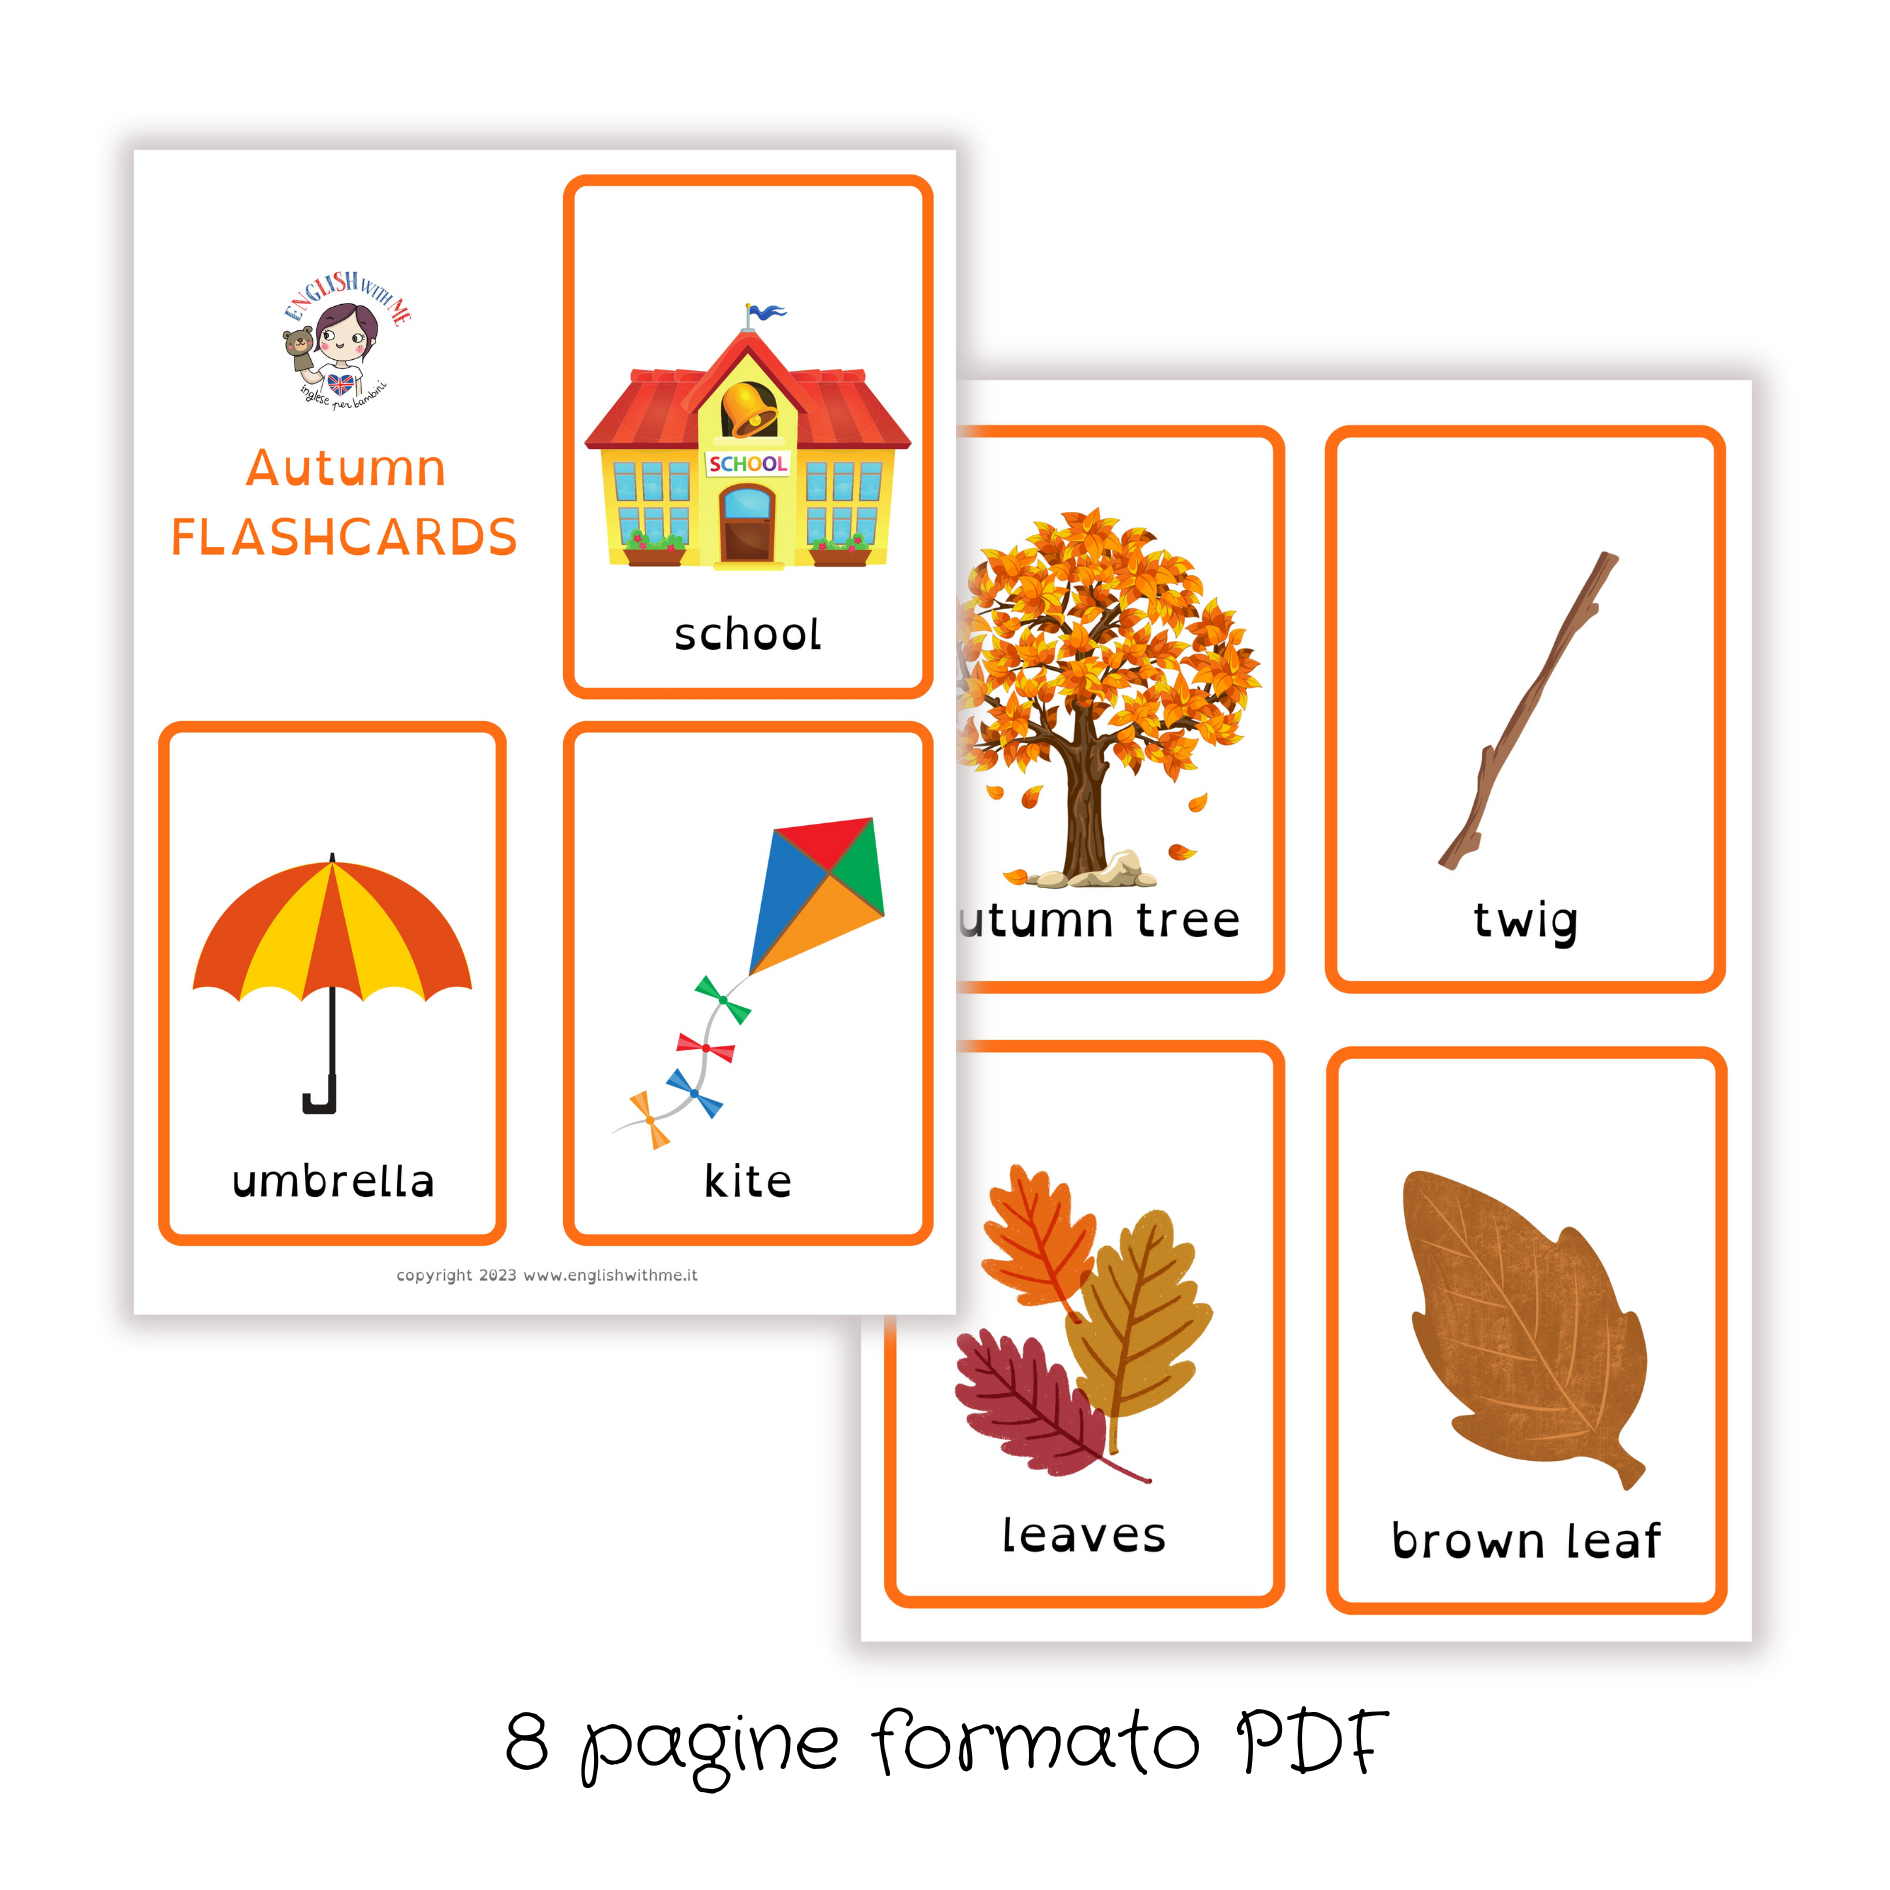 Autumn flashcards for children